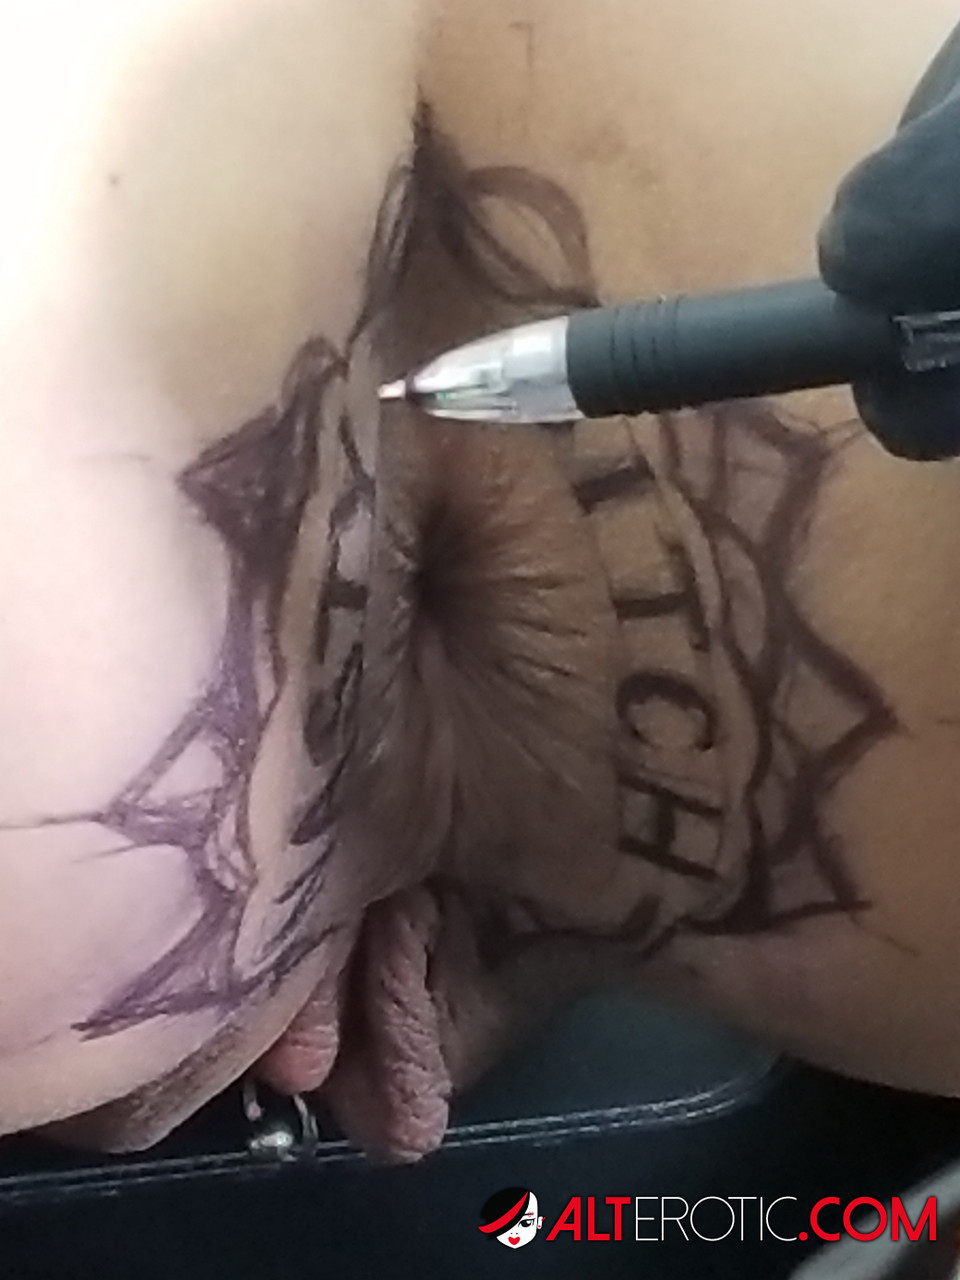 Latina chick Kitty Jaguar gets a butt tattoo before being fucked ポルノ写真 #424168451 | Alt Erotic Pics, Kitty Jaguar, Tattoo, モバイルポルノ